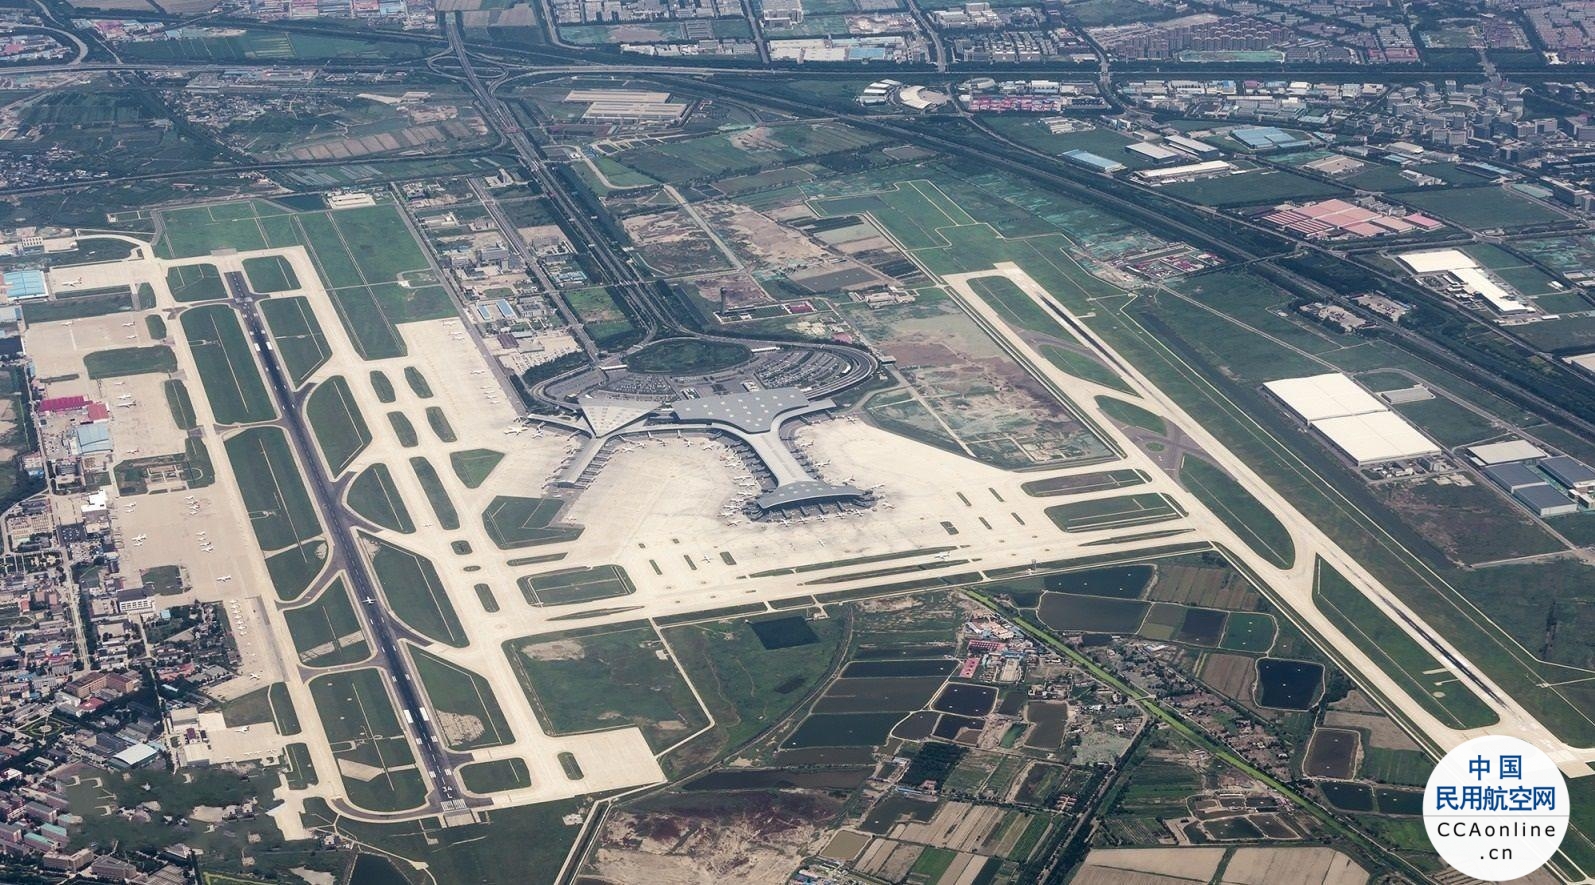 天津机场三期改扩建工程获批 将新建T3航站楼